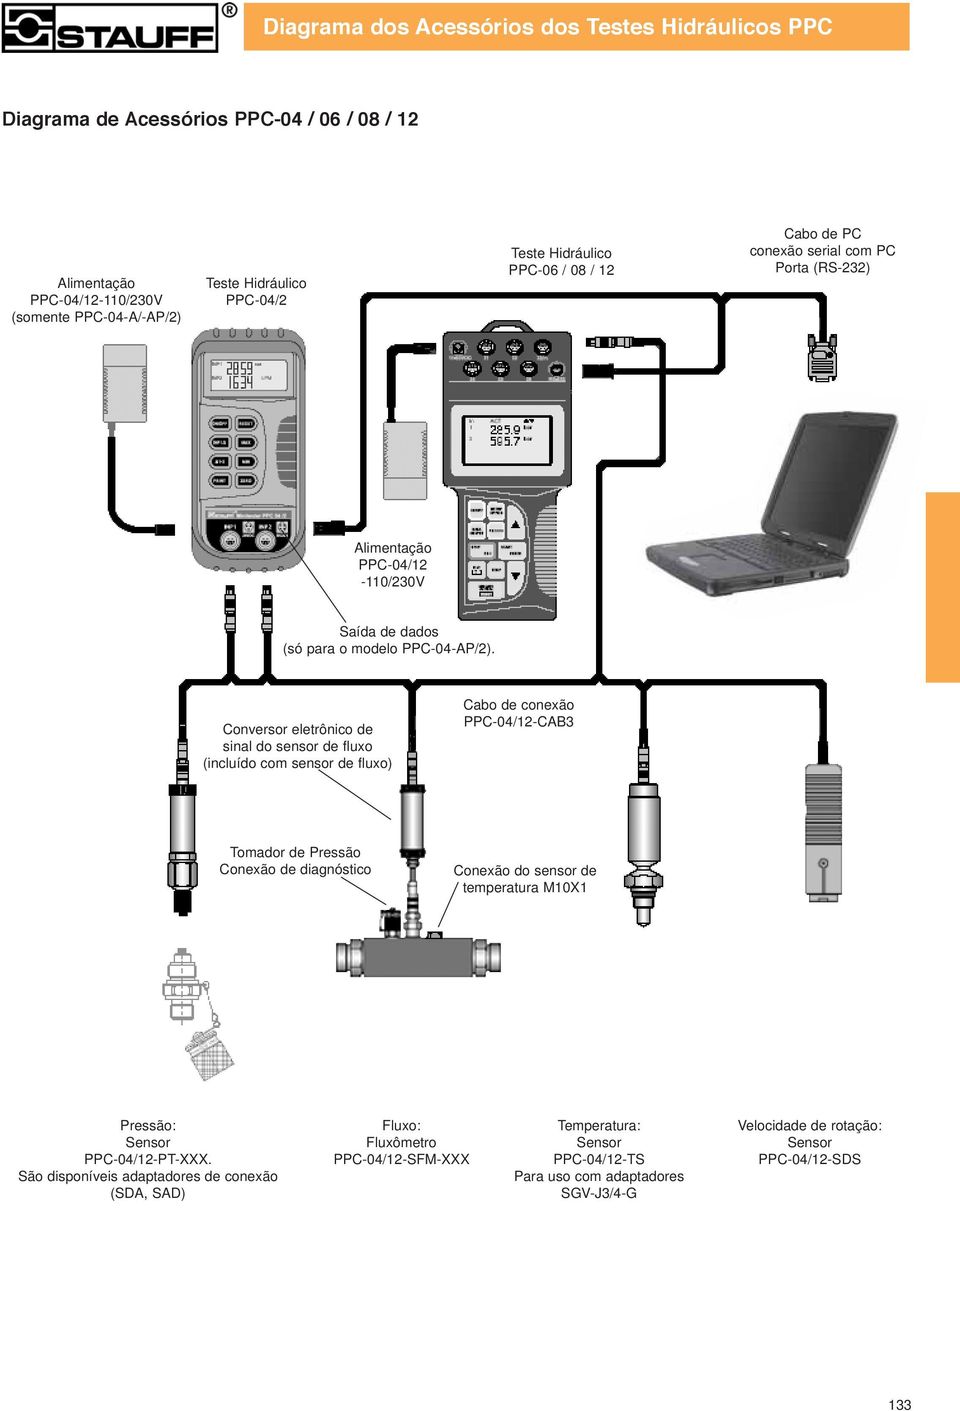 Conversor eletrônico de sinal do sensor de fluxo (incluído com sensor de fluxo) Cabo de conexão PPC-04/12-CAB3 Tomador de Pressão Conexão de diagnóstico Conexão do sensor de temperatura M10X1